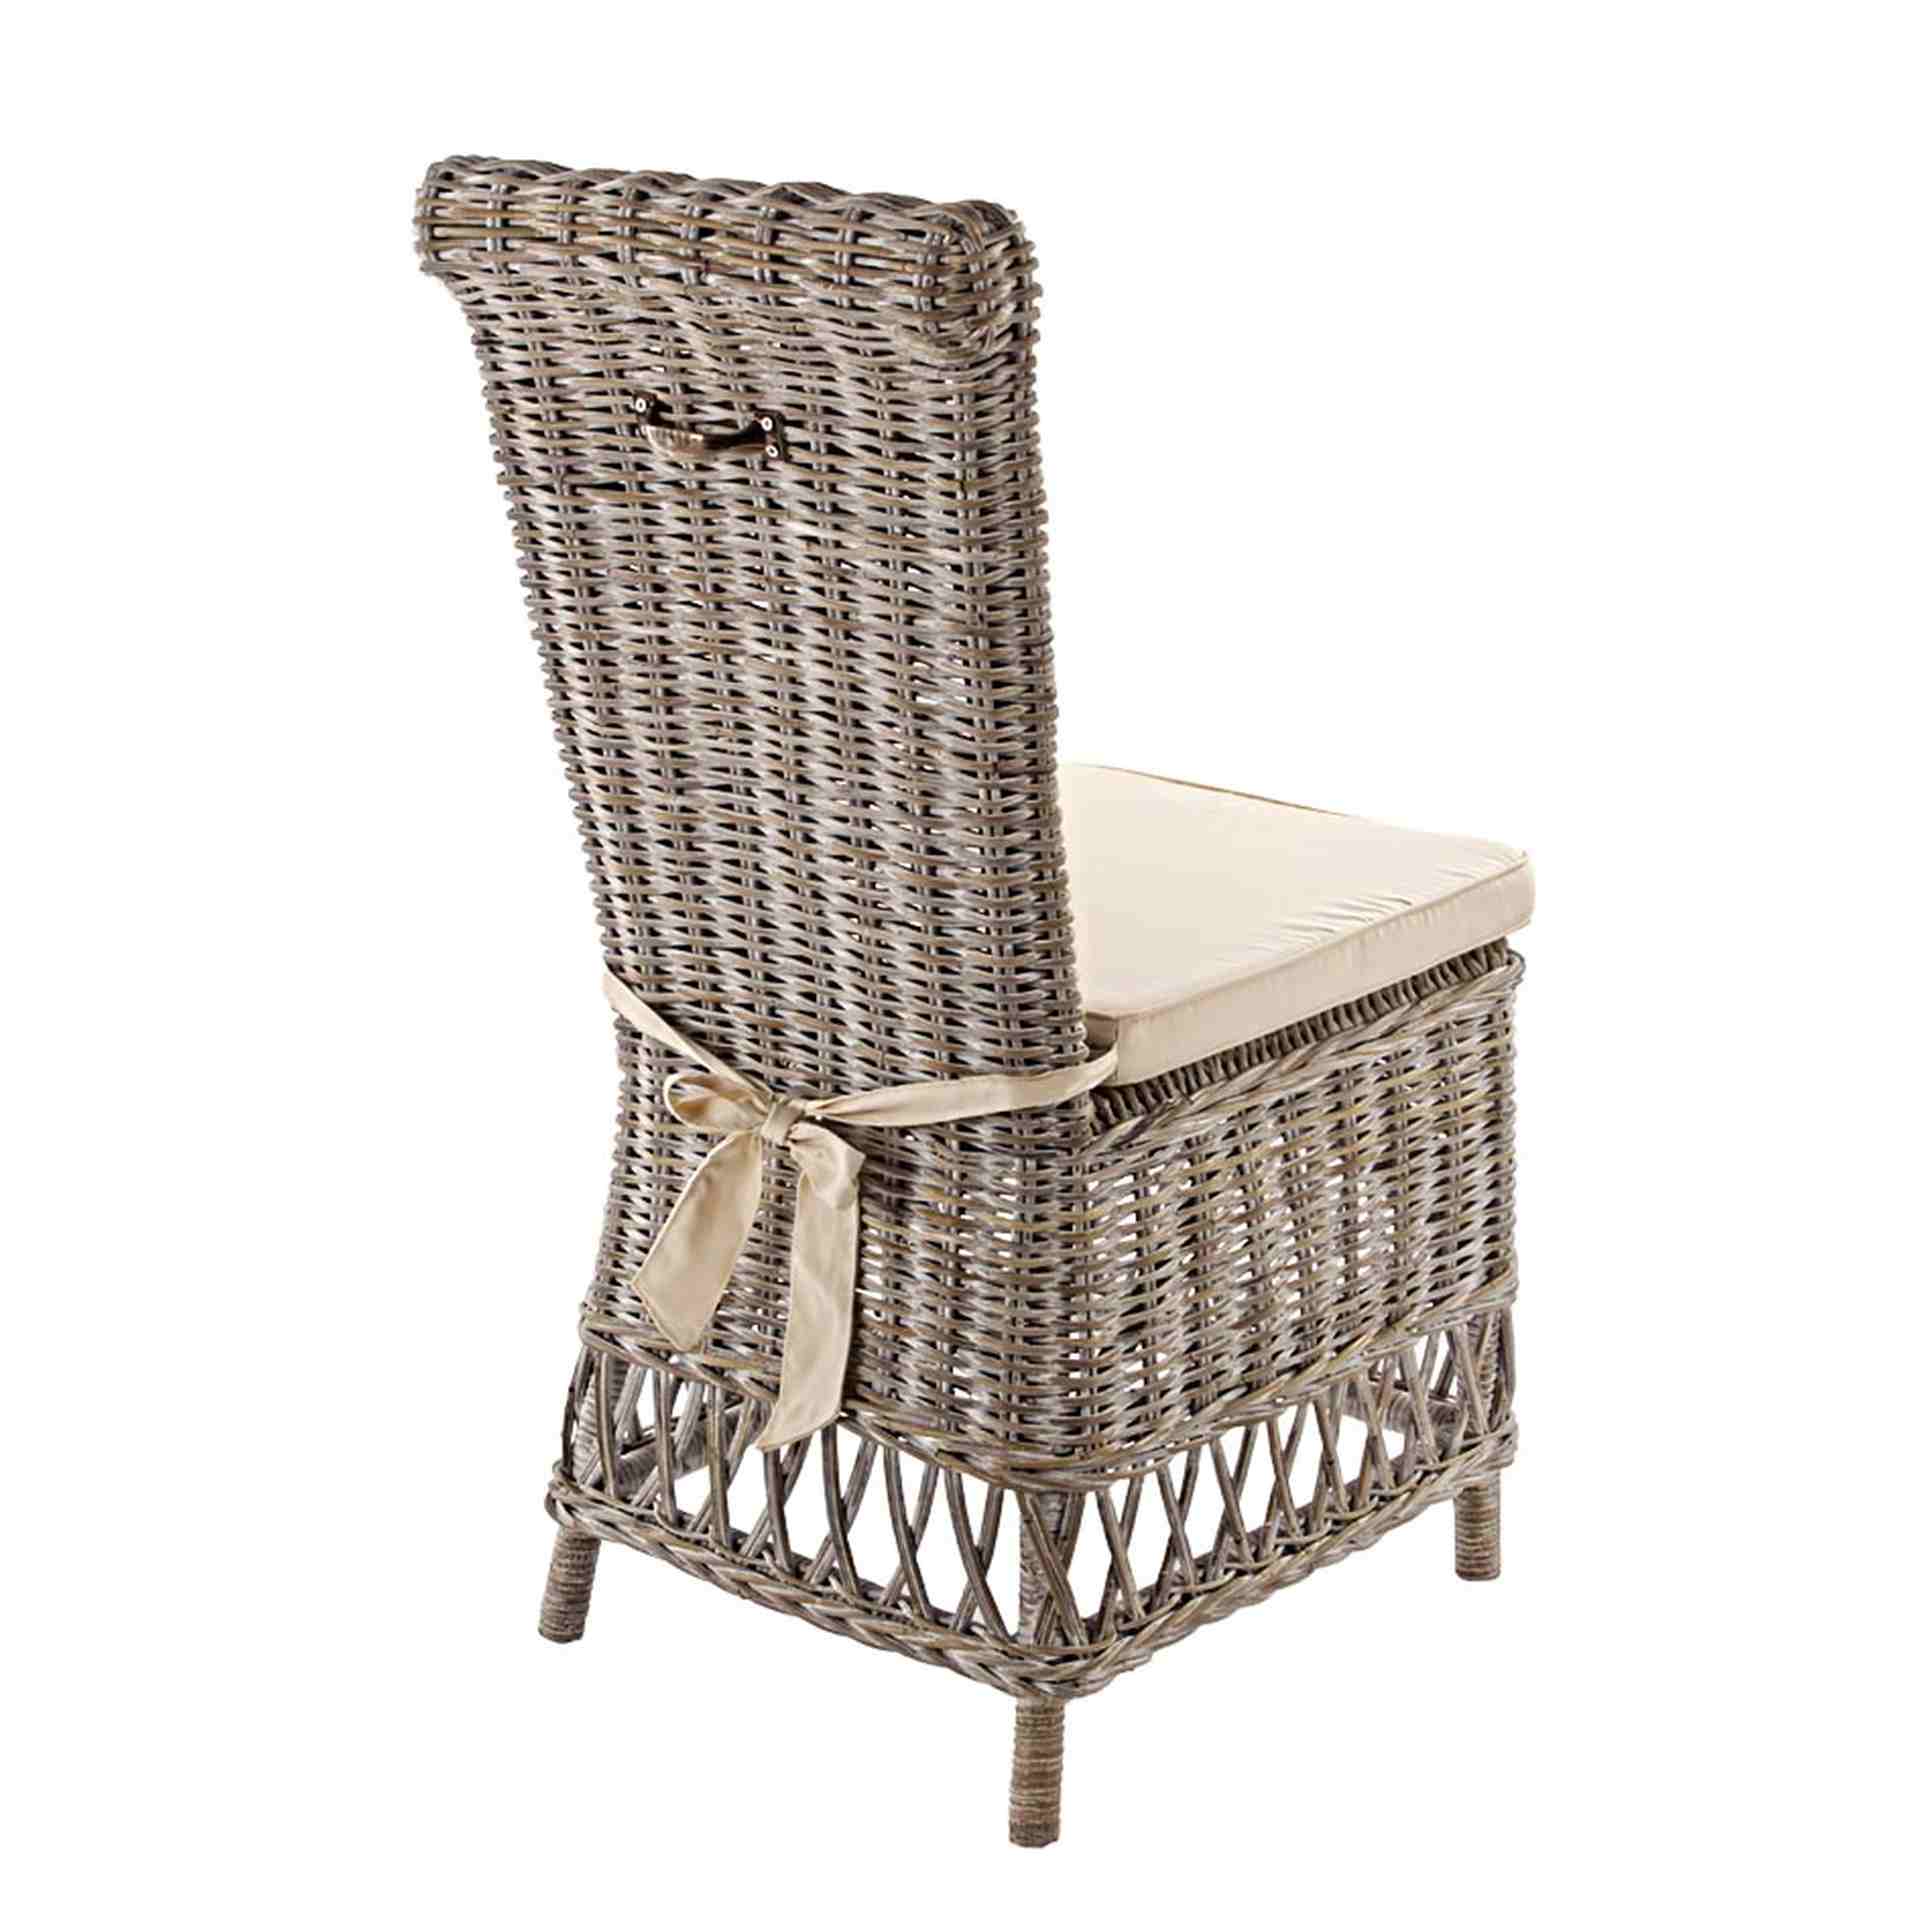 Der Stuhl Warna überzeugt mit seinem klassischem Design. Gefertigt wurde der Stuhl aus Rattan. Der Stuhl wird inklusive Sitzkissen aus Baumwolle geliefert. Die Sitzhöhe beträgt 53 cm.